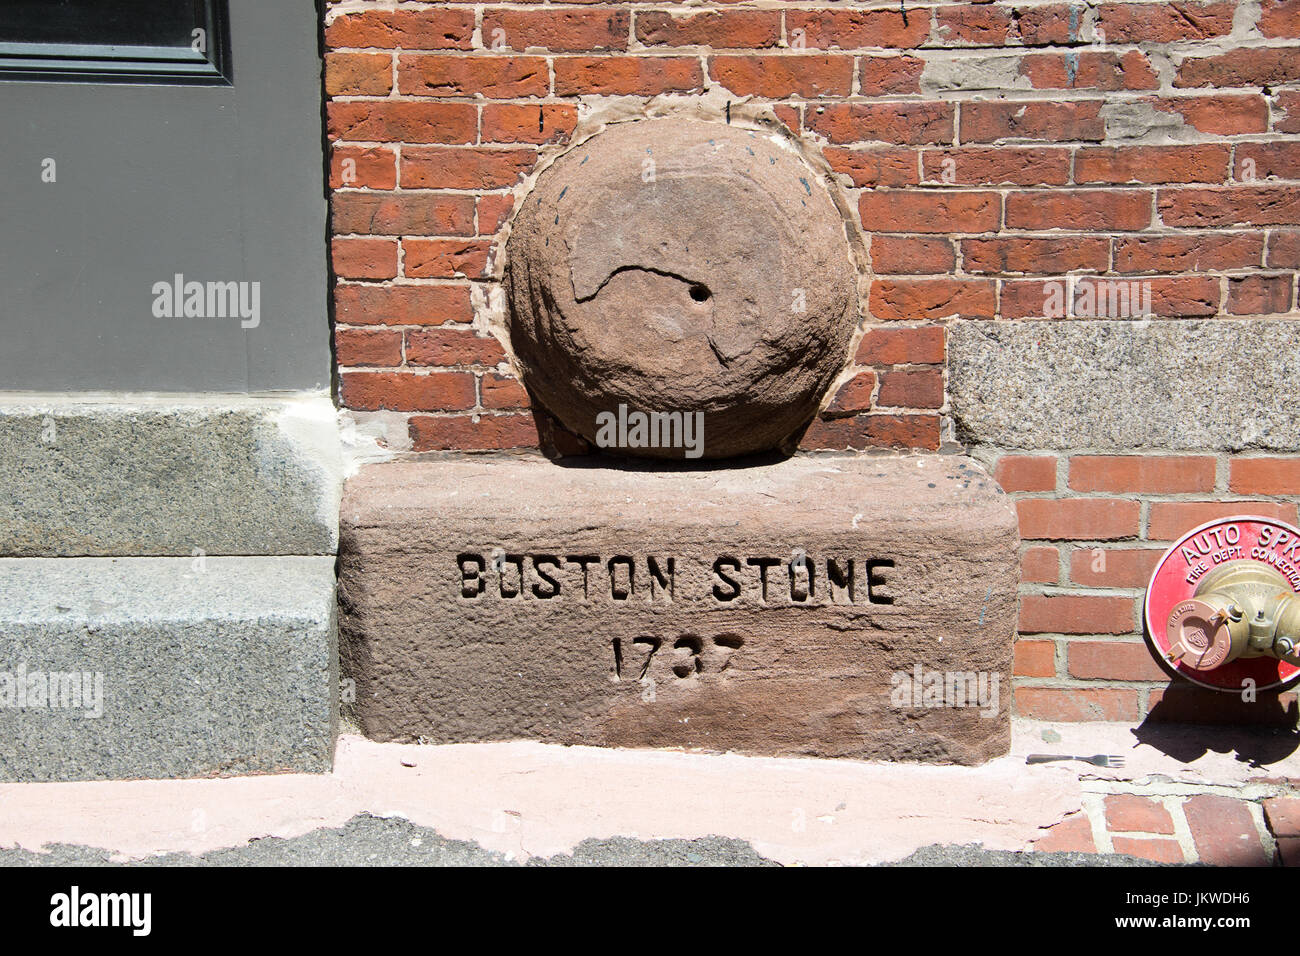 Boston Stone, 1737, Blackstone Block Distrito Histórico, Boston, MA, EE.UU. Foto de stock